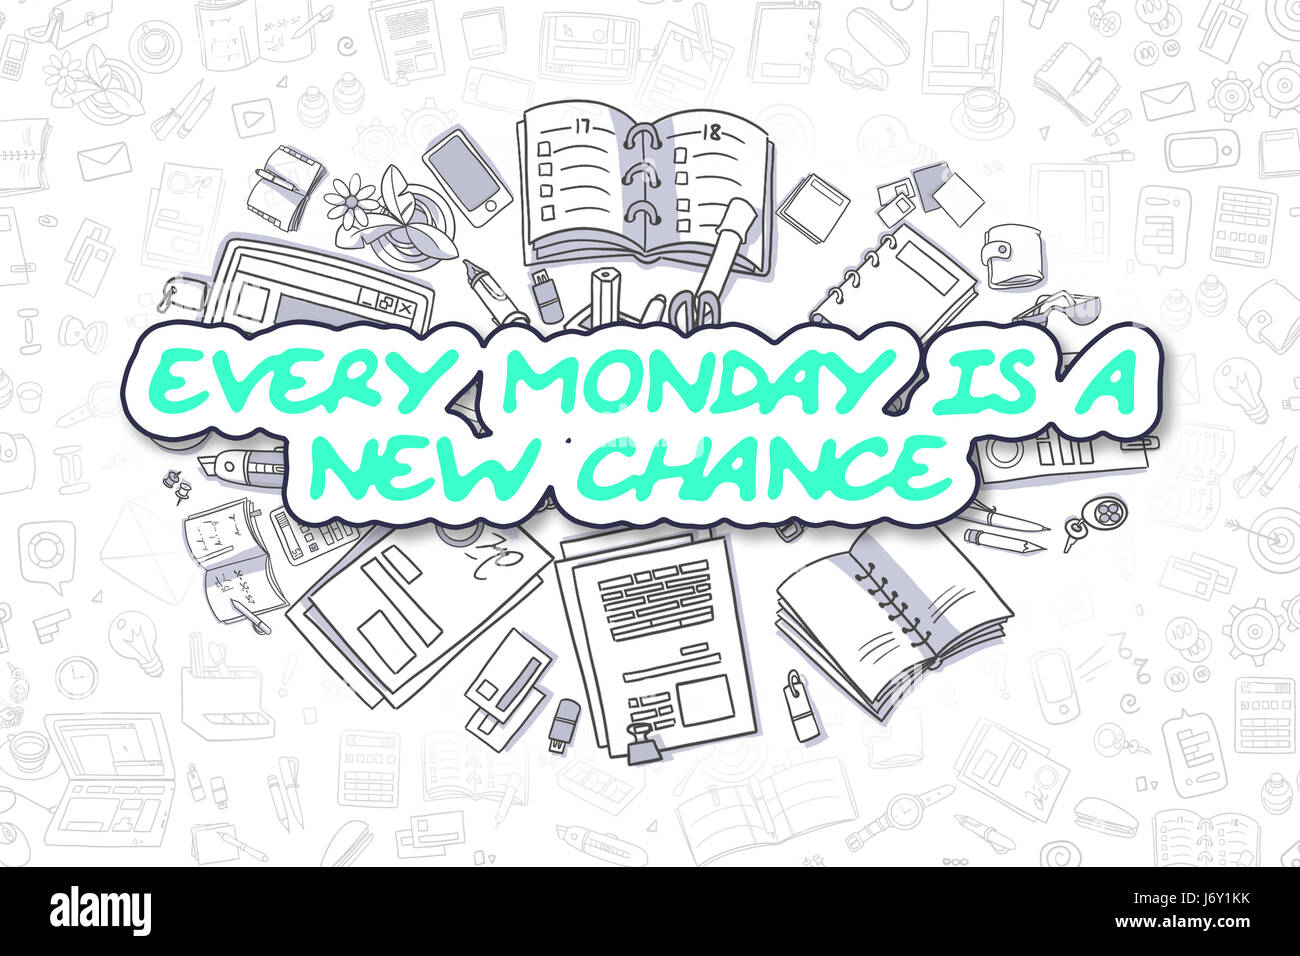 Cada lunes es una nueva oportunidad - Concepto de negocio. Foto de stock